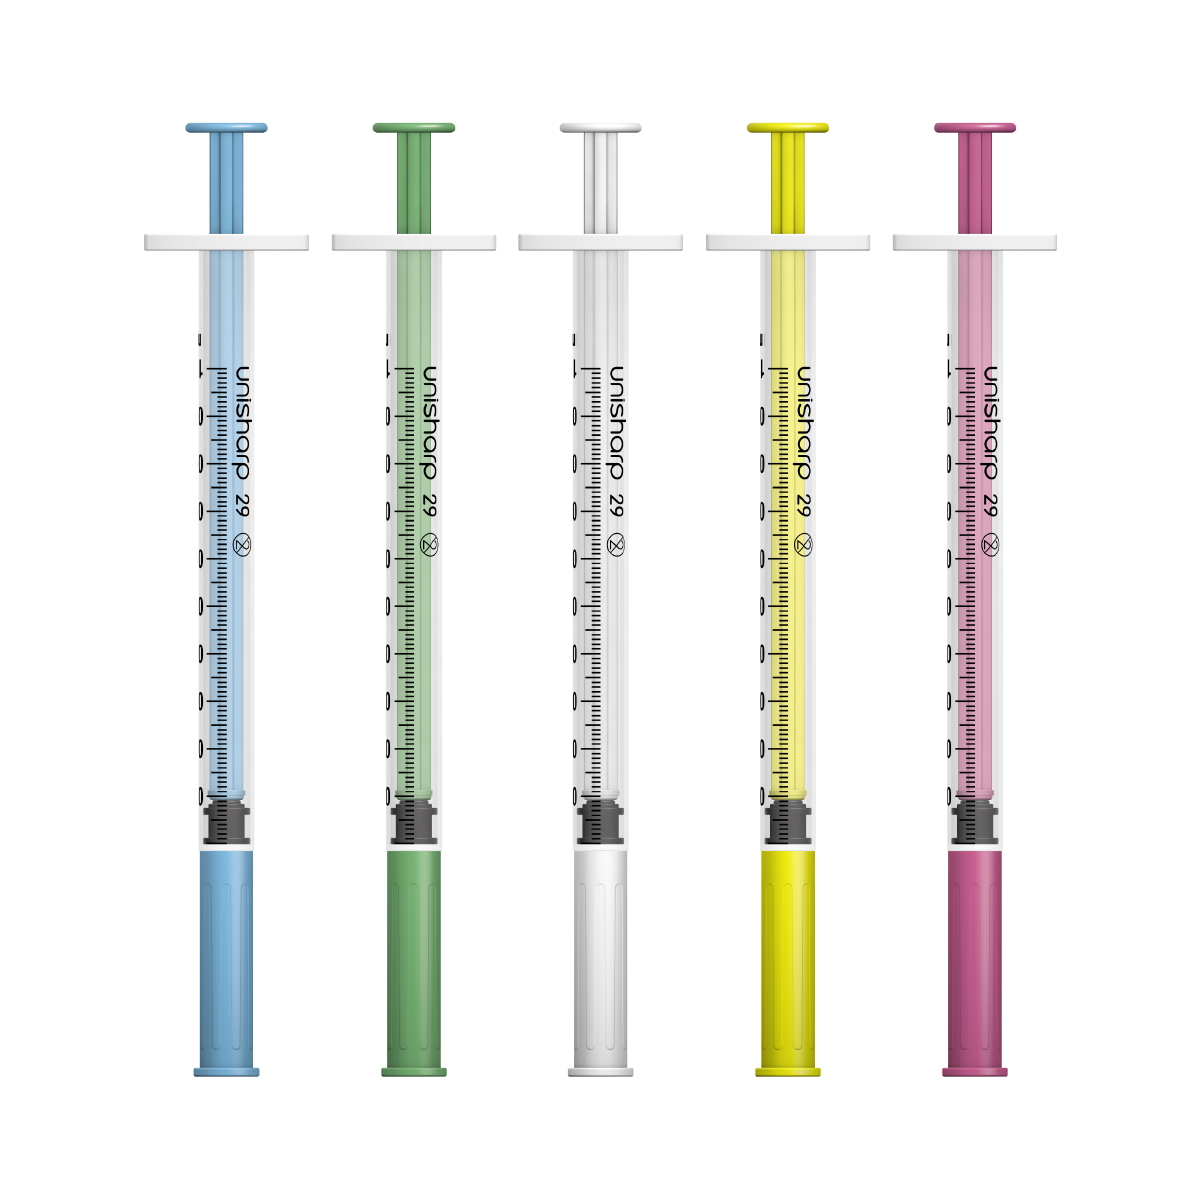 Unisharp 1ml 29G fixed needle syringe: mixed colours